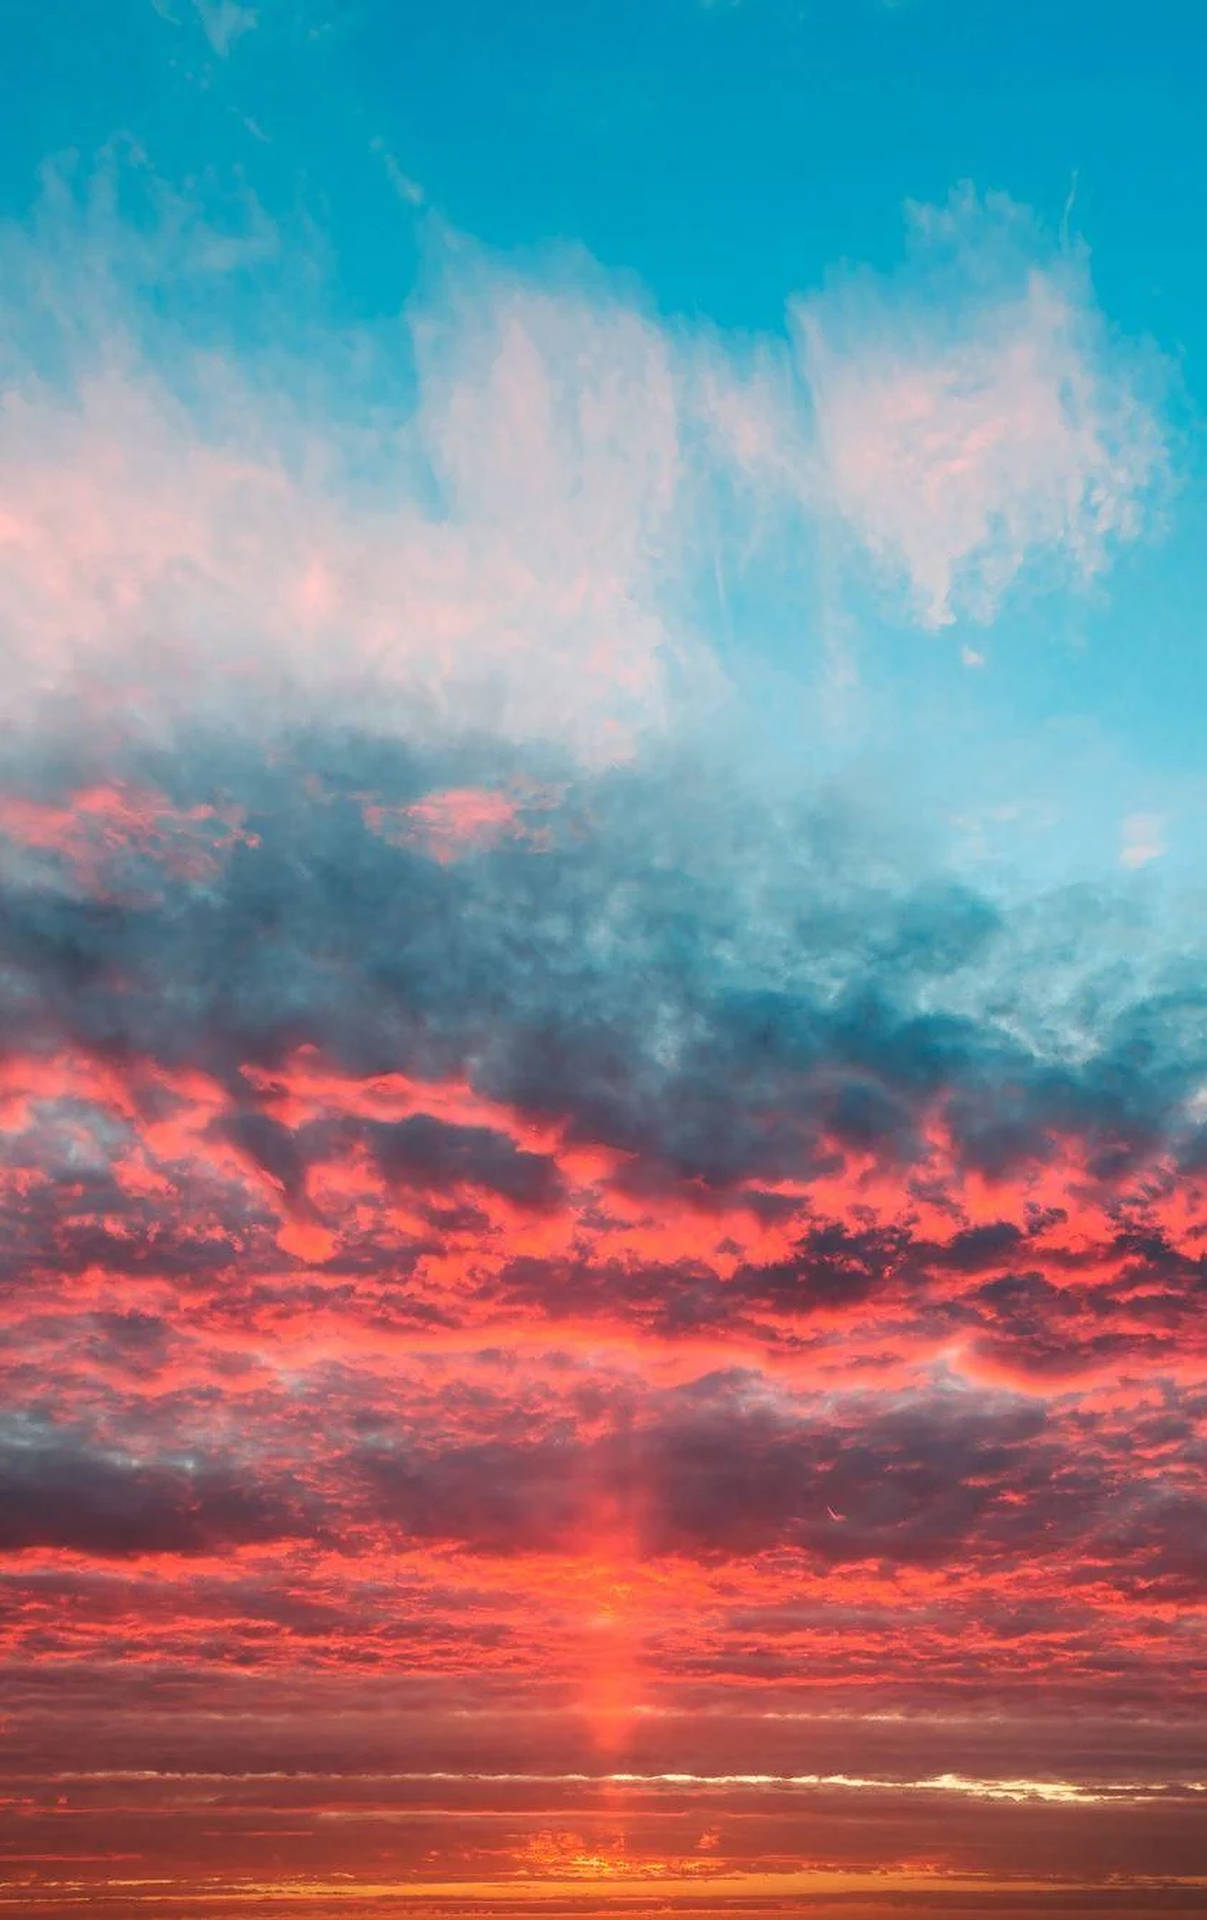 Aesthetic Blue Sunset Sky Wallpaper